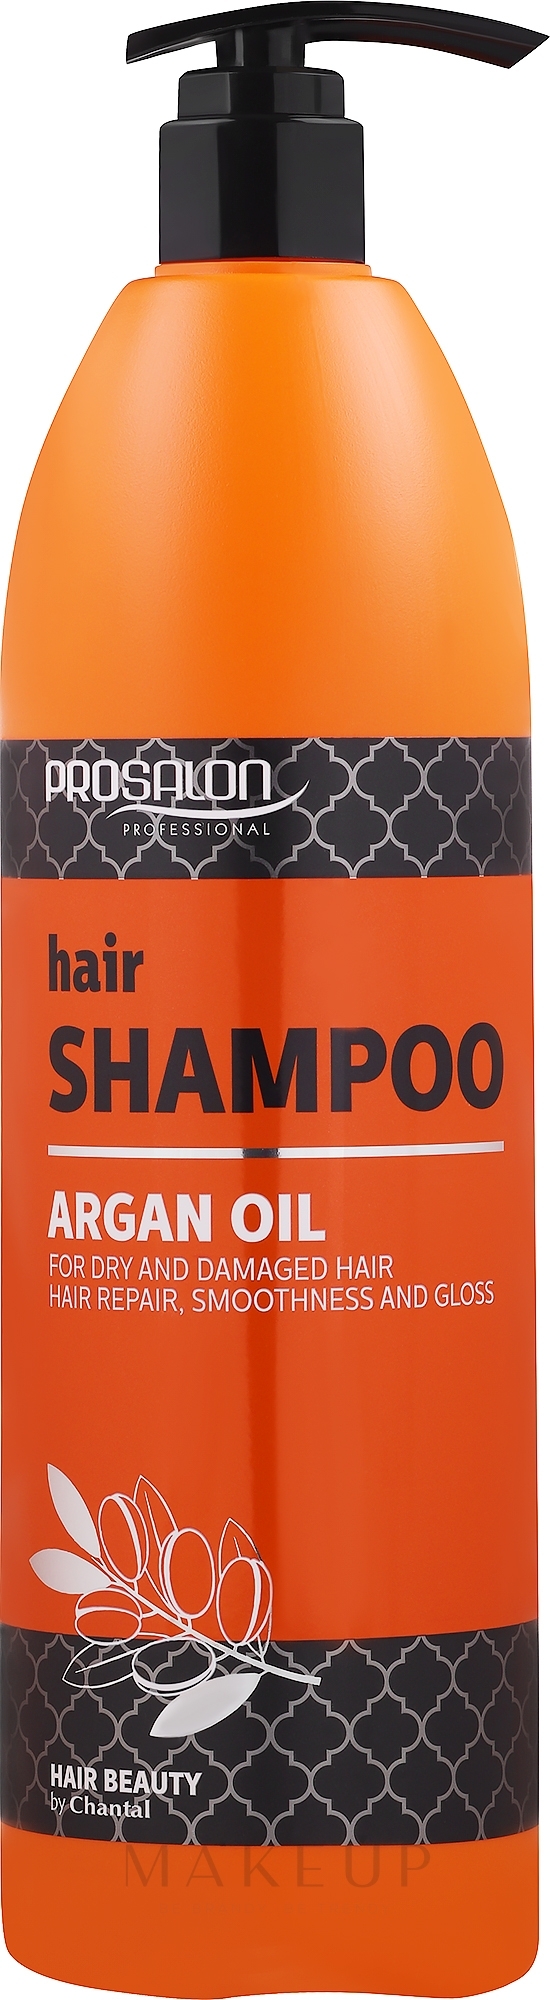 Shampoo mit Arganöl für trockenes und strapaziertes Haar - Prosalon Argan Oil Shampoo  — Foto 1000 g